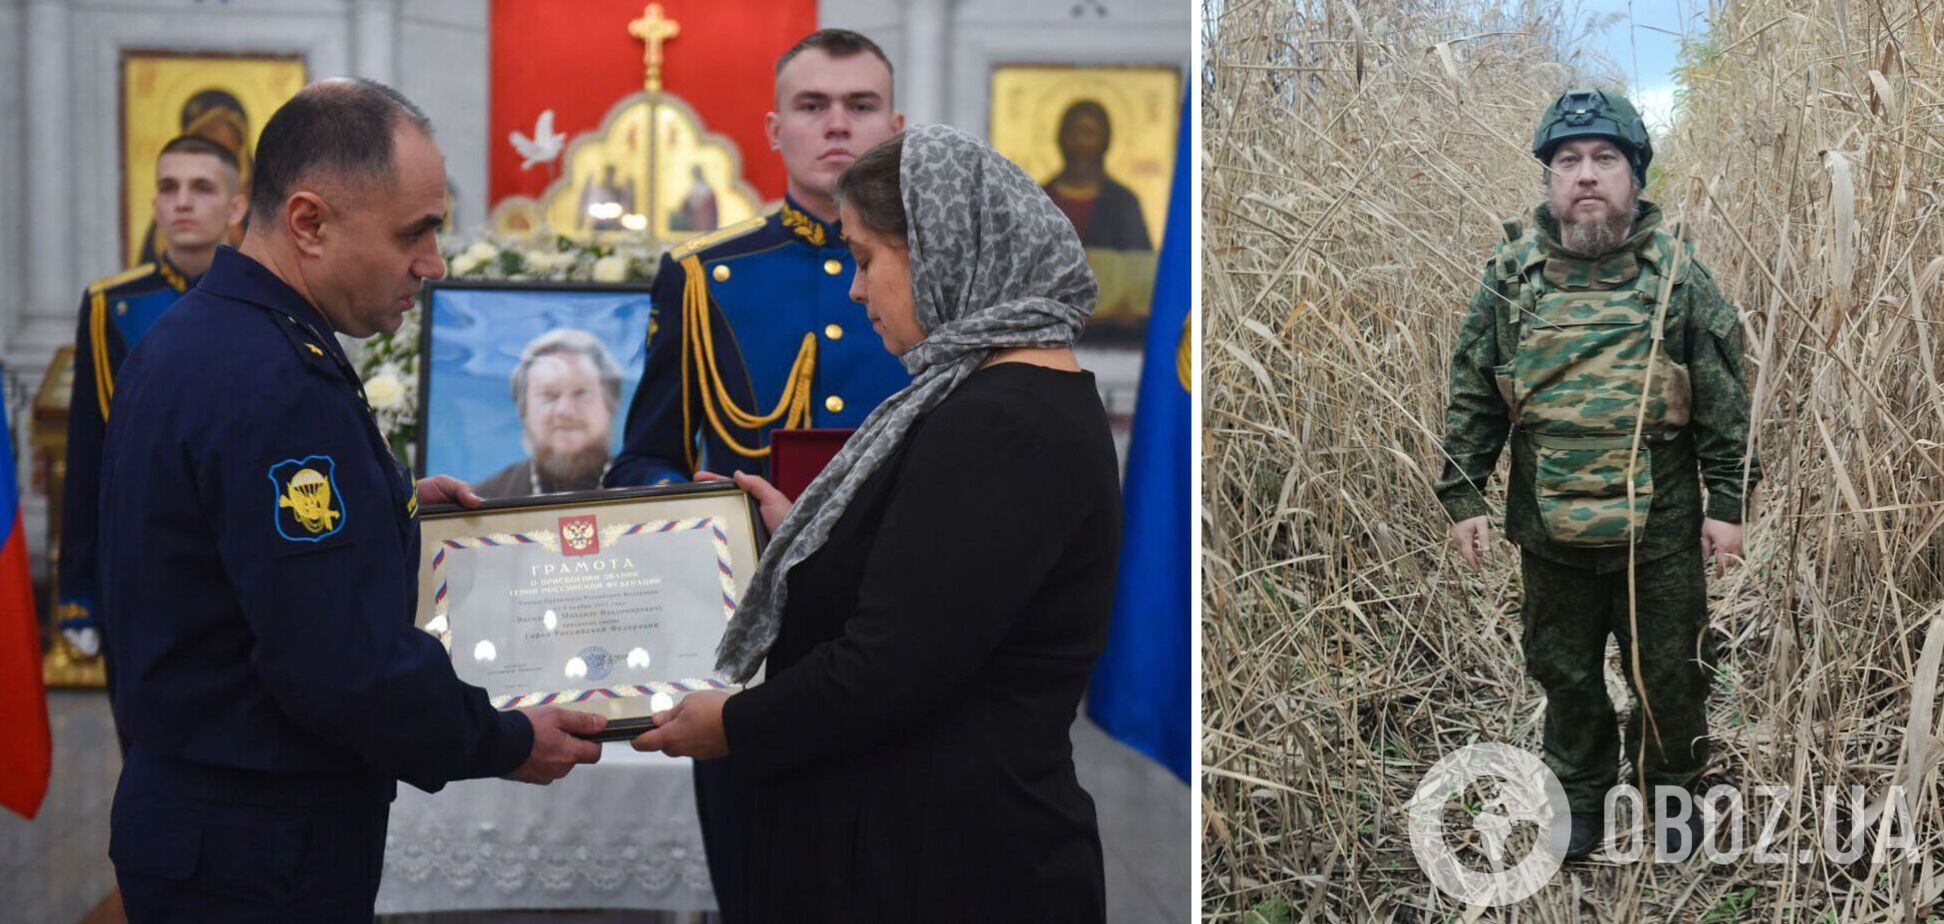 Путин присвоил звание героя России ликвидированному попу Васильеву, советовавшему россиянкам 'плодиться'. Фото